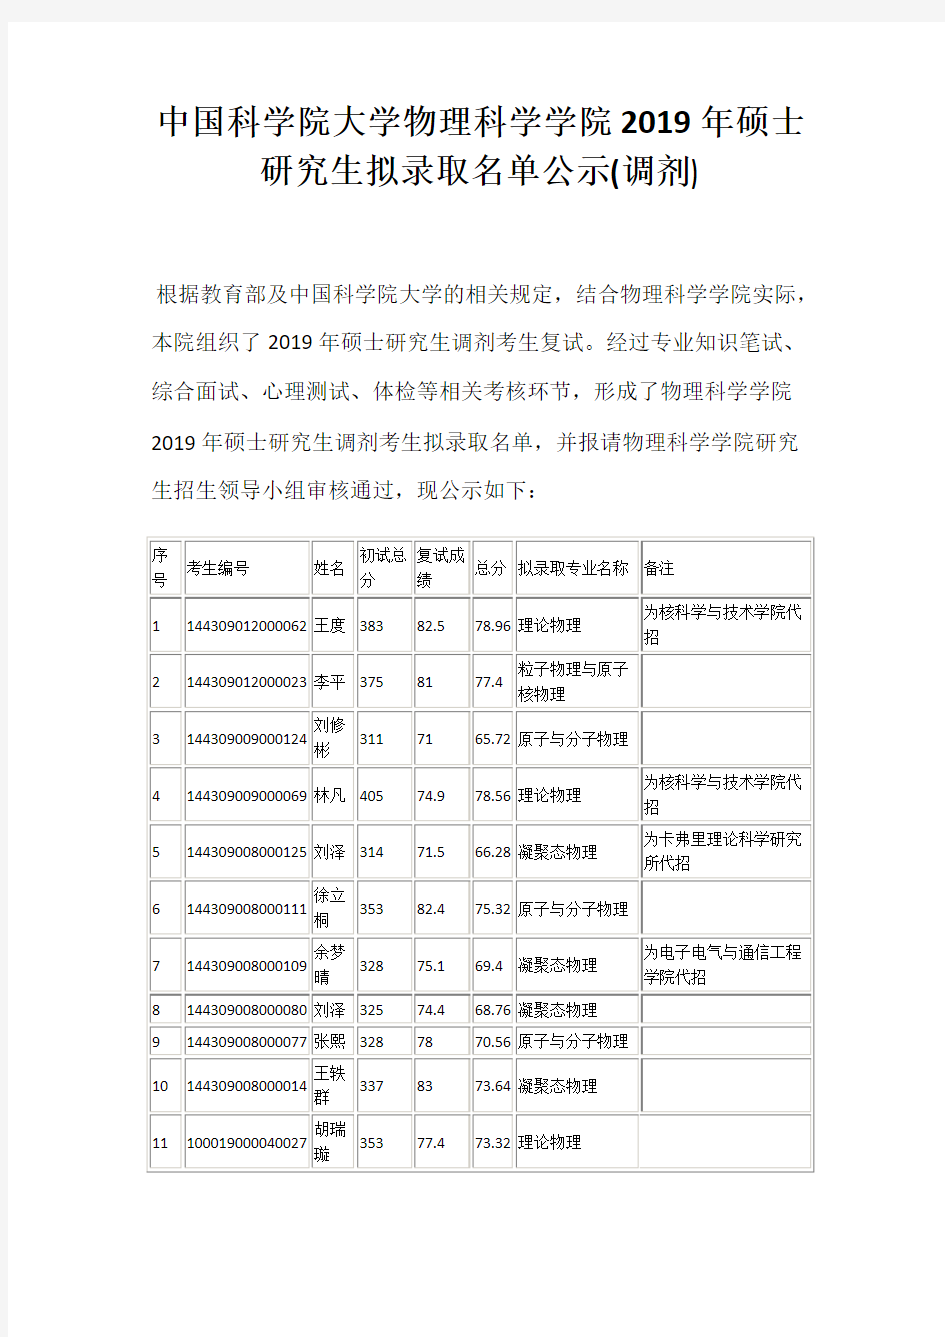 中国科学院大学物理科学学院2019年硕士研究生拟录取名单公示(调剂)